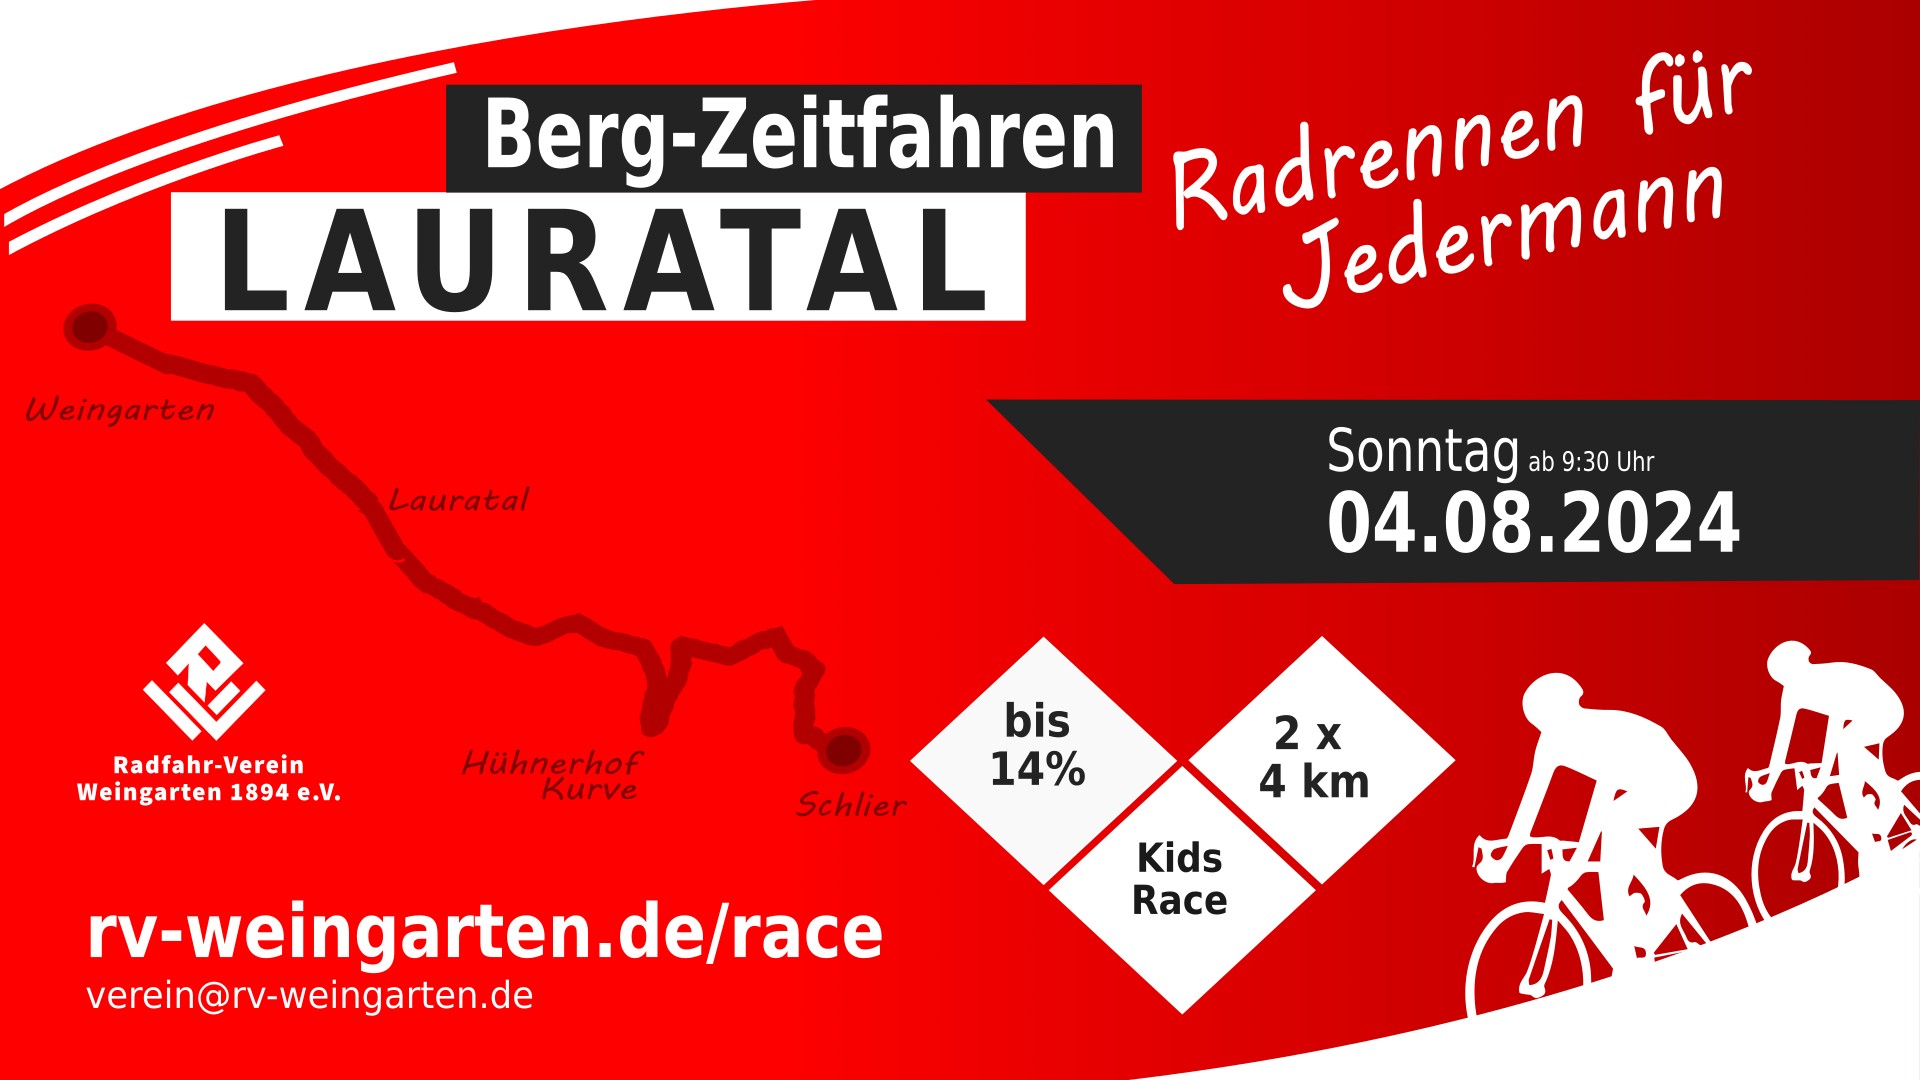 Banner für Lauratal-Bergzeitfahren im Format 1920x1080